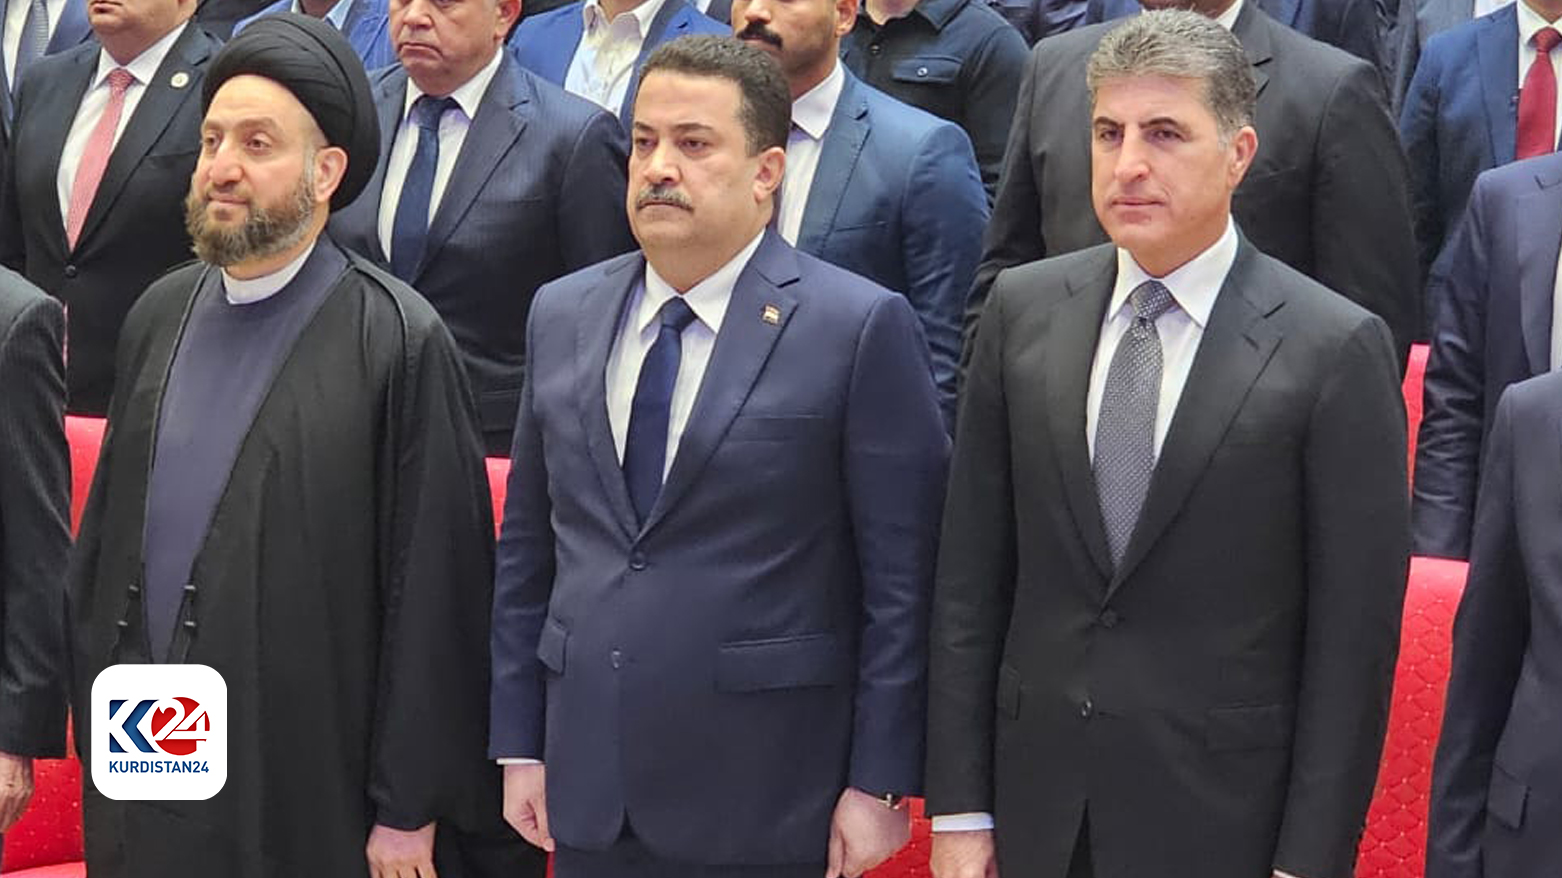 Kurdistan Region president to meet Iraqi leaders in Baghdad